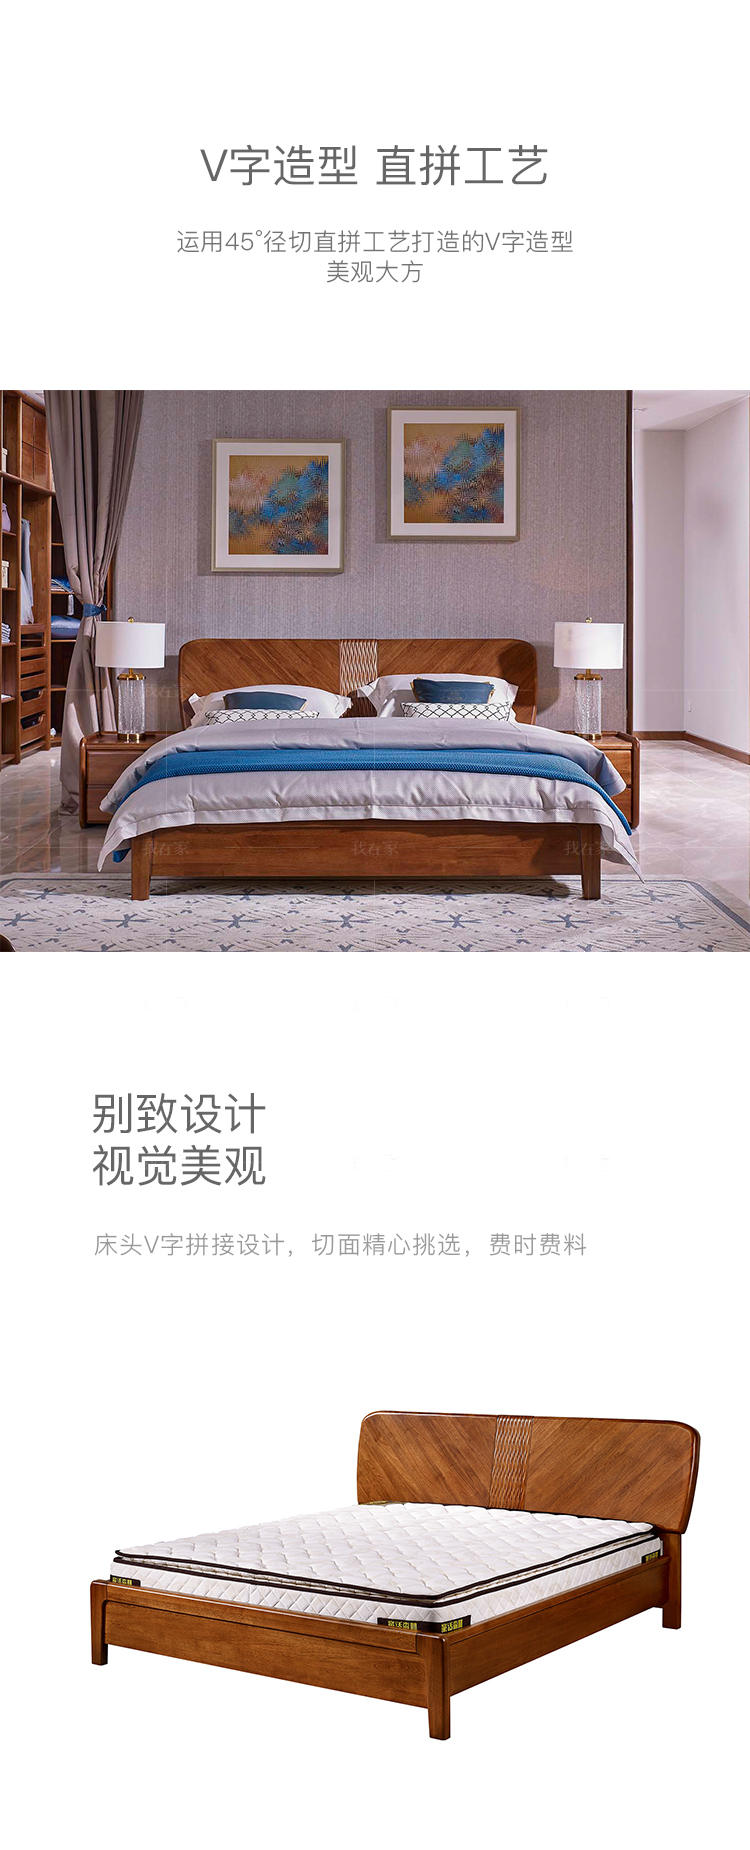 现代实木风格云何双人床的家具详细介绍